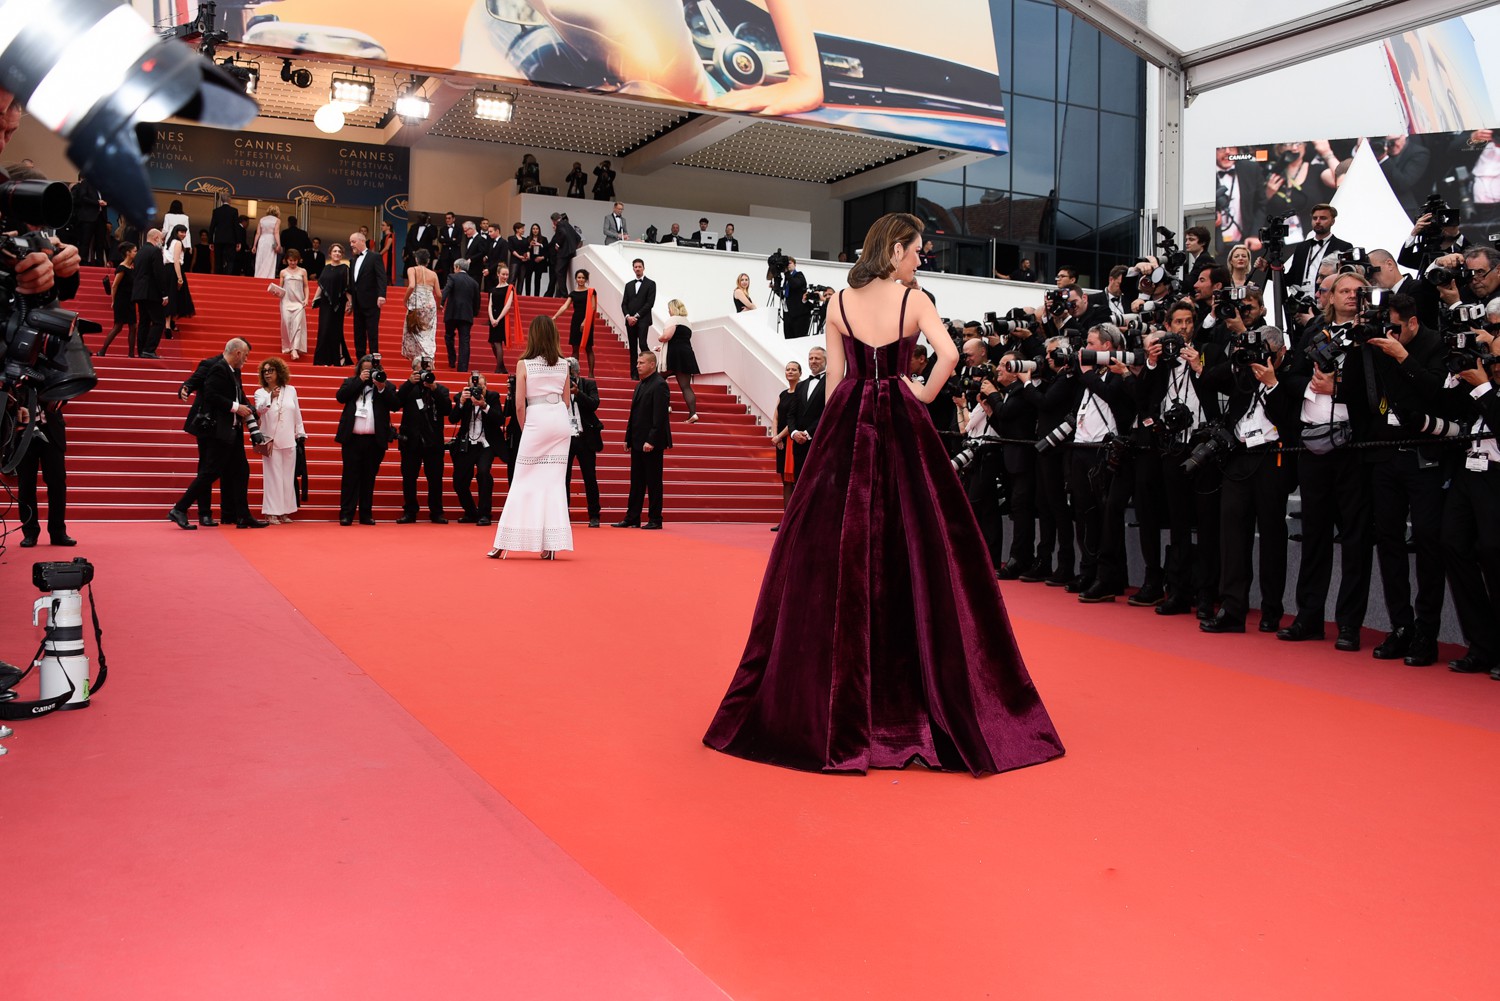 Ngày 3 lên thảm đỏ Cannes, Lý Nhã Kỳ chuyển hẳn sang tông tím từ váy áo đến makeup chuẩn quý cô thập niên 80 - Ảnh 6.